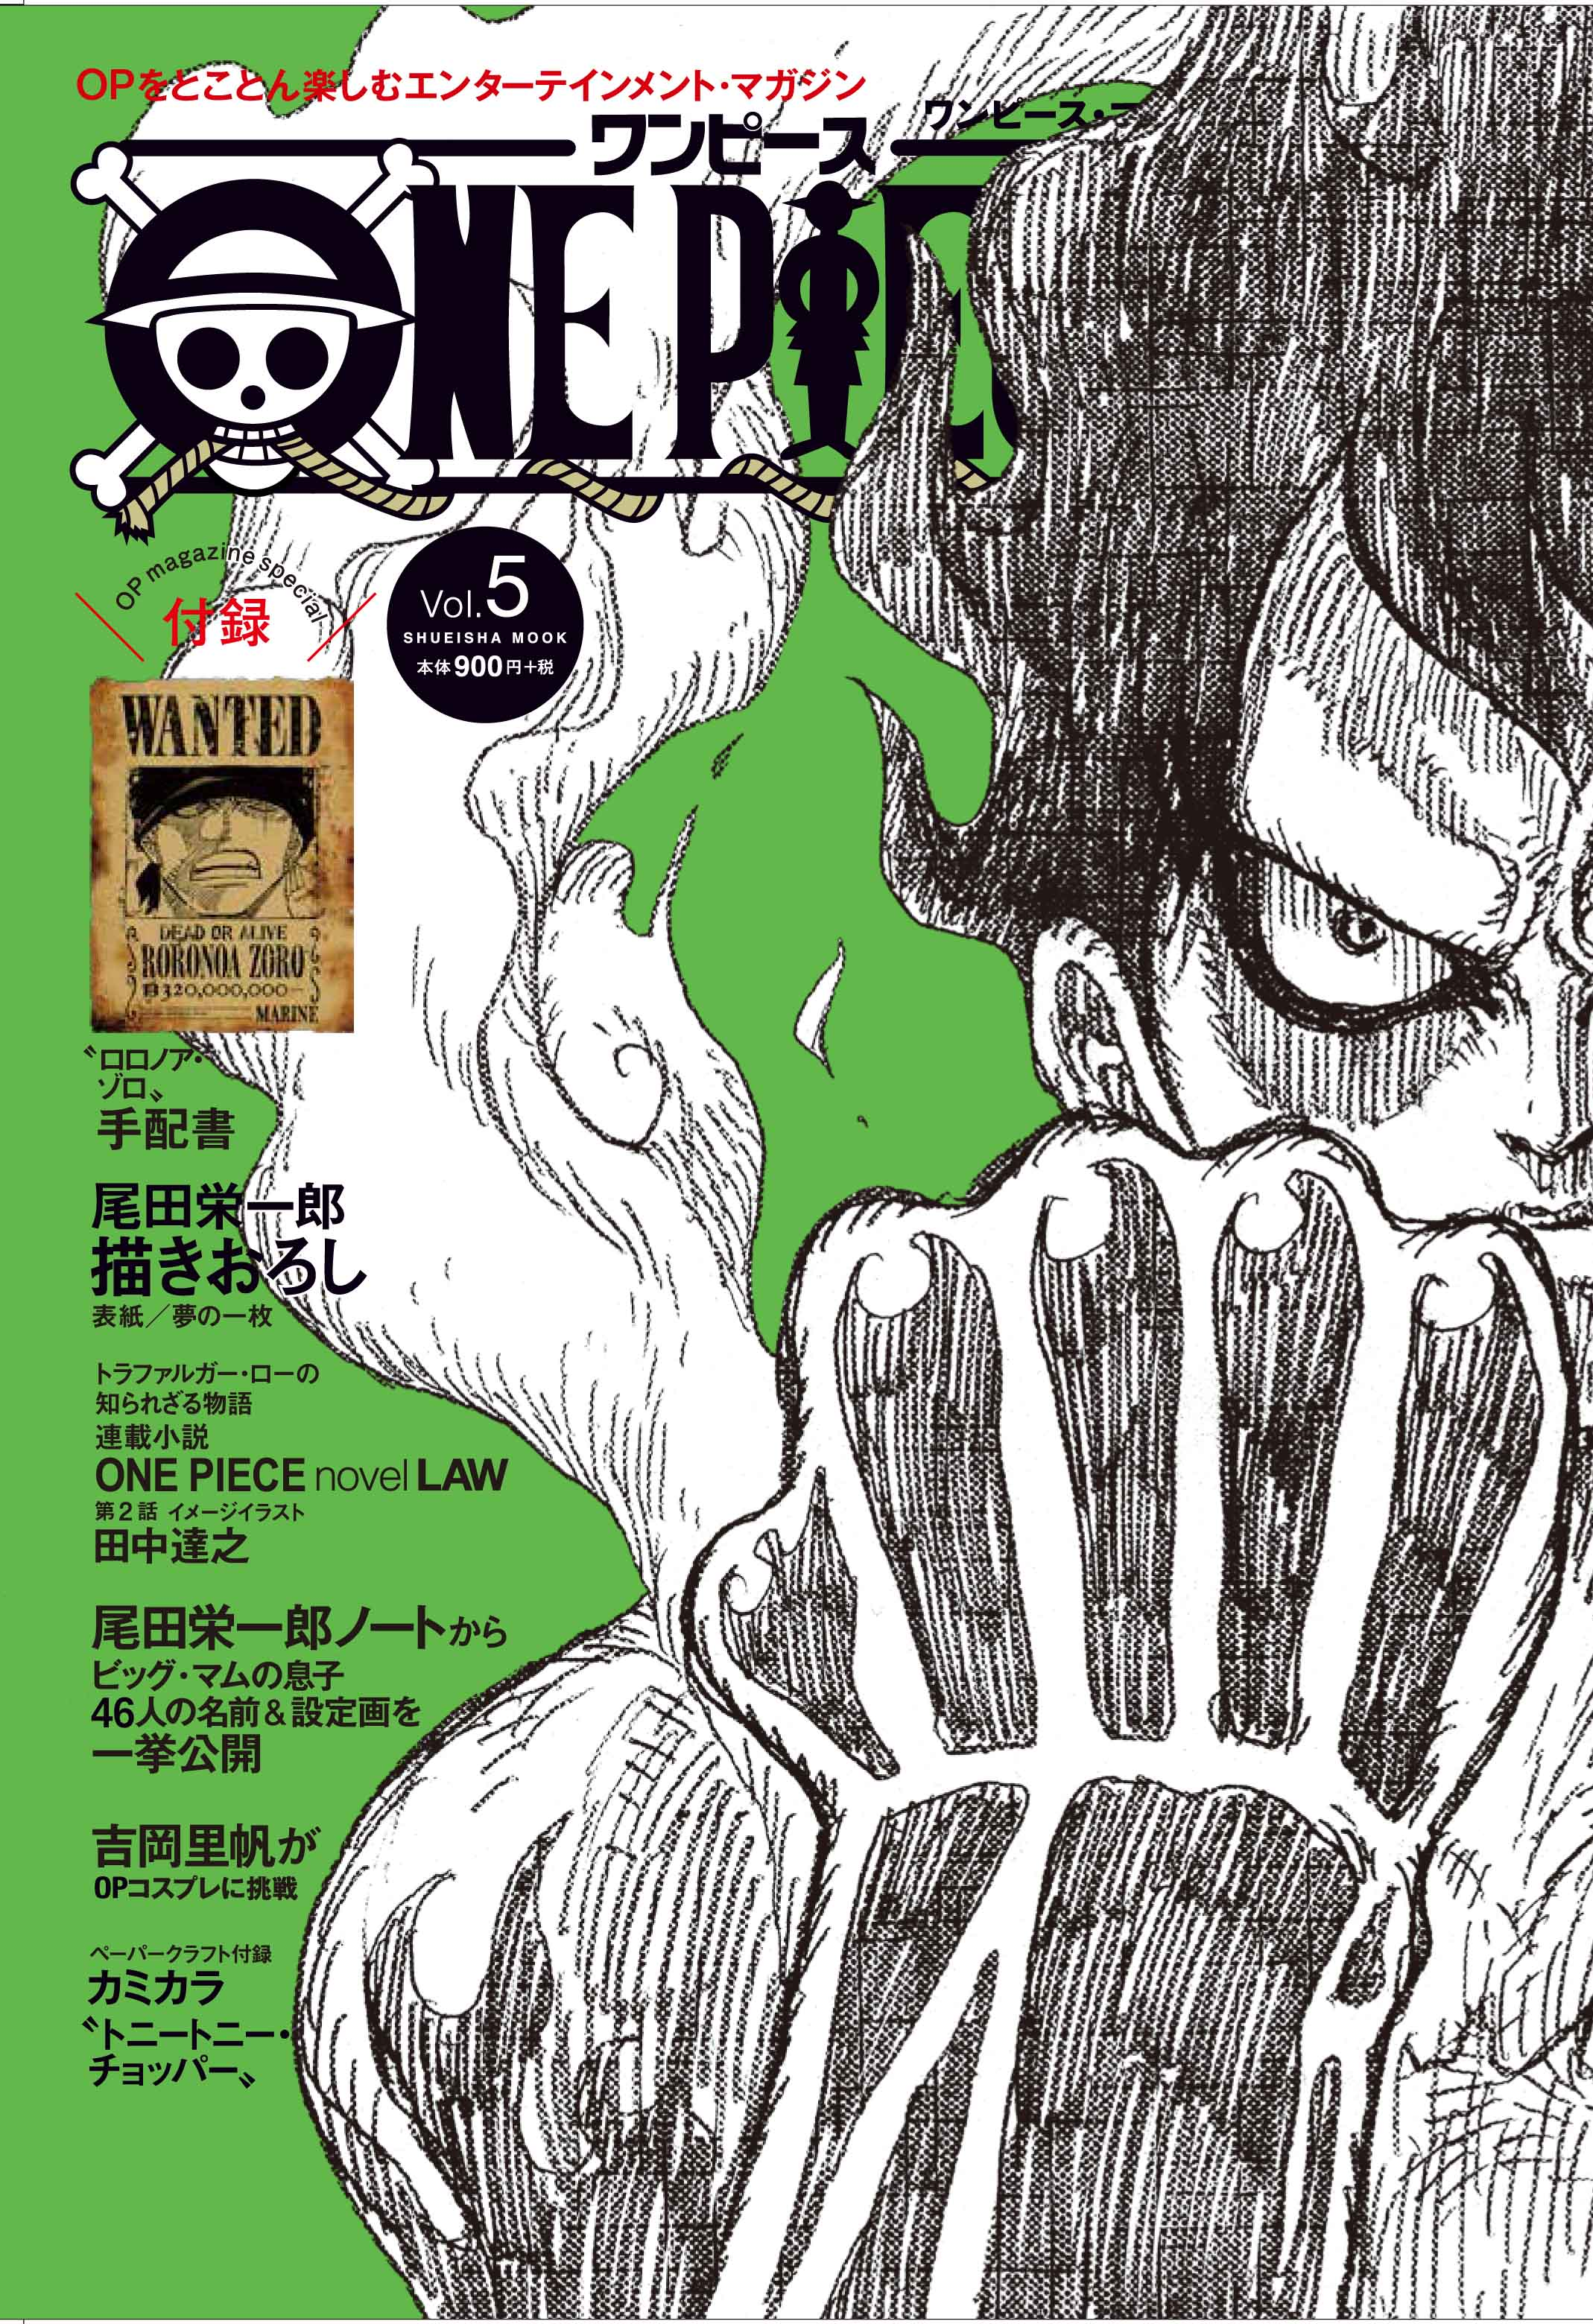 ONE PIECE magazine Vol.7 Japanese original version / STAMPEDE